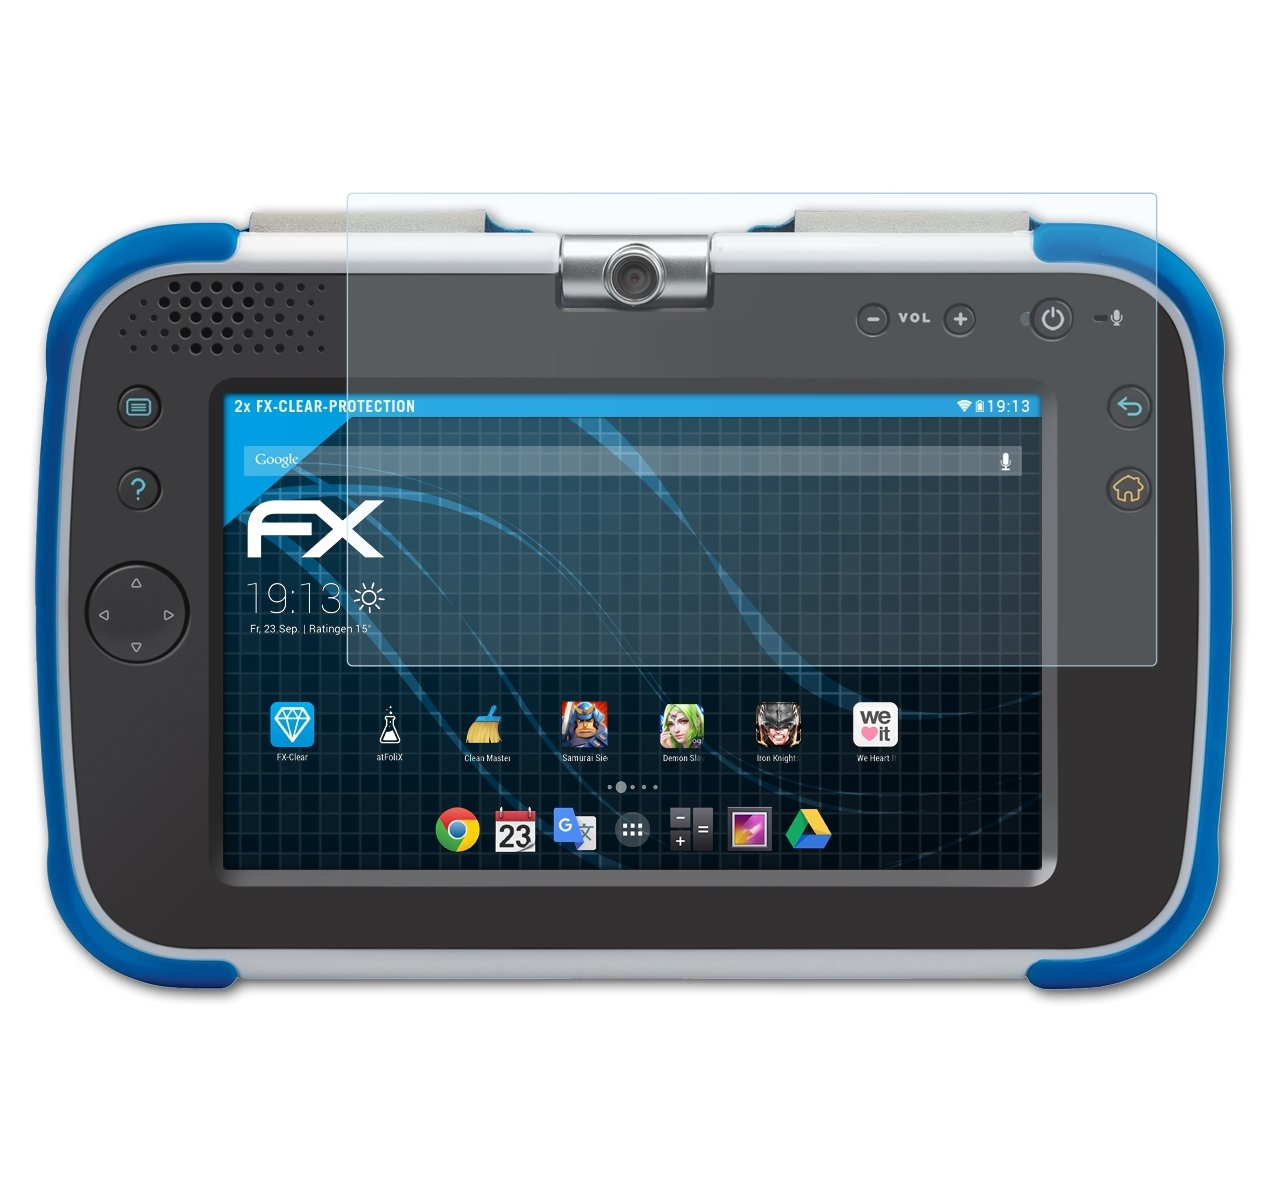 ATFOLIX 2x MAX Storio 2.0) FX-Clear VTech Displayschutz(für XL